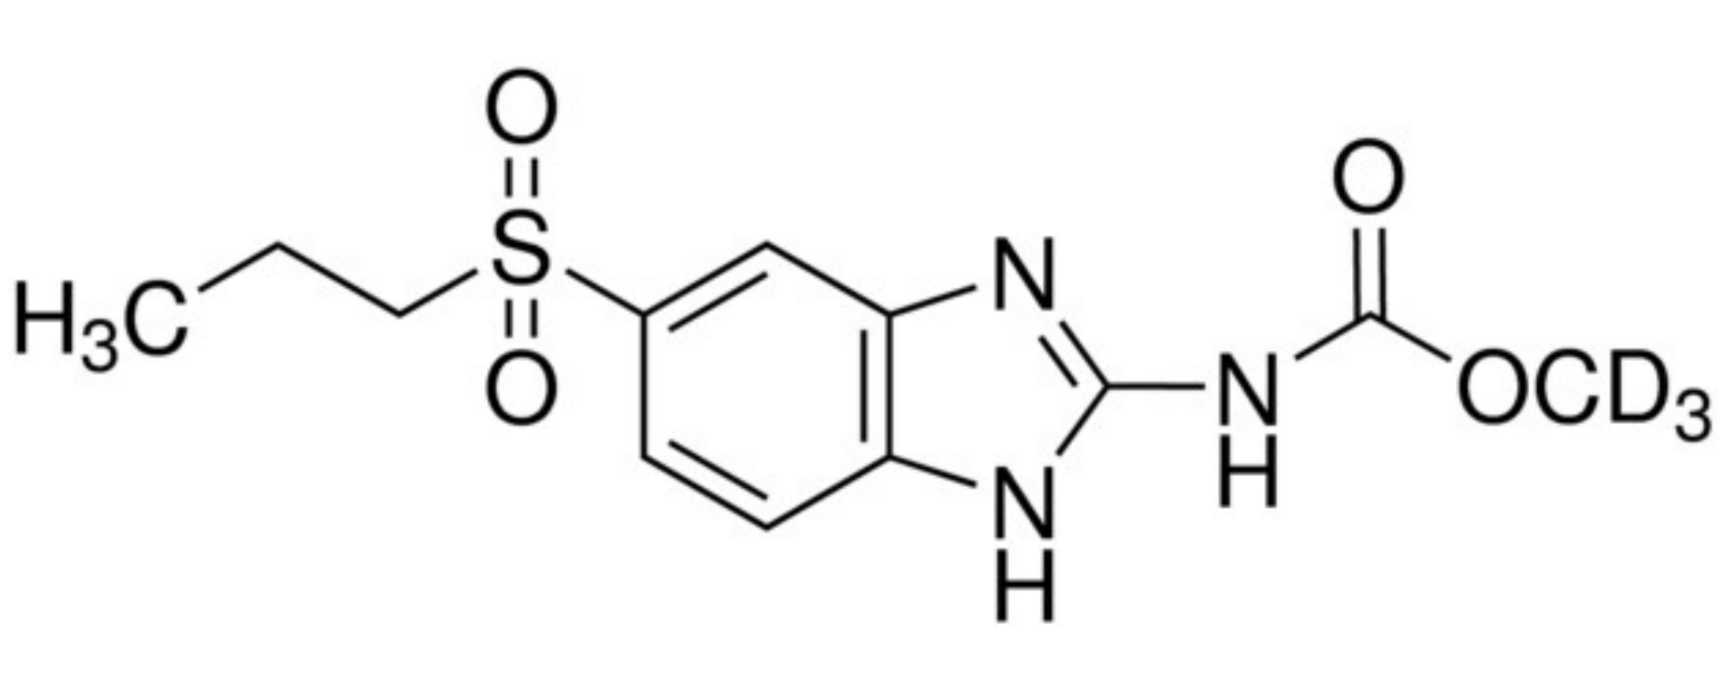 Albendazole sulfone-D3